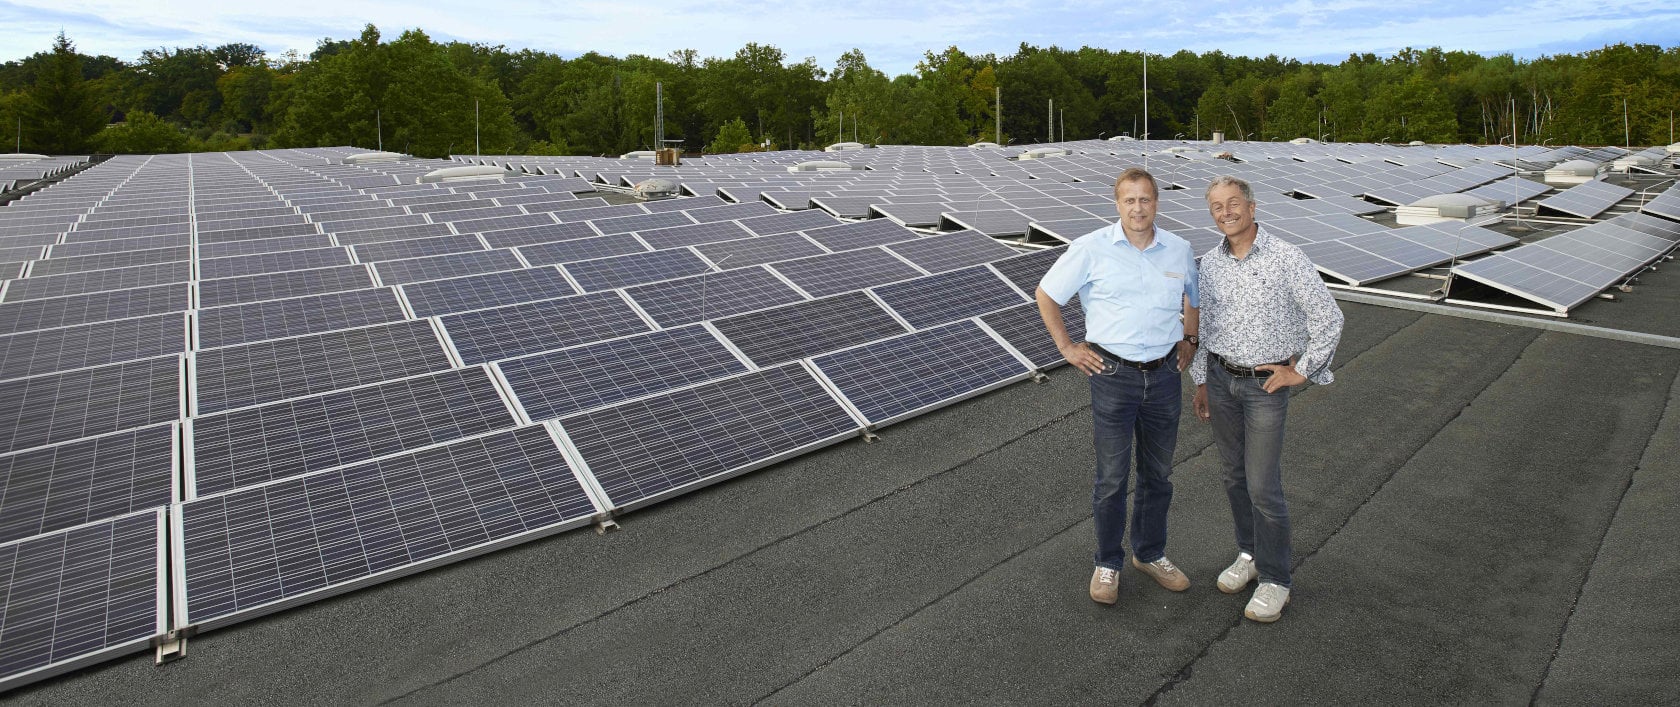 Anlage für Solarstrom mit Solarzellen